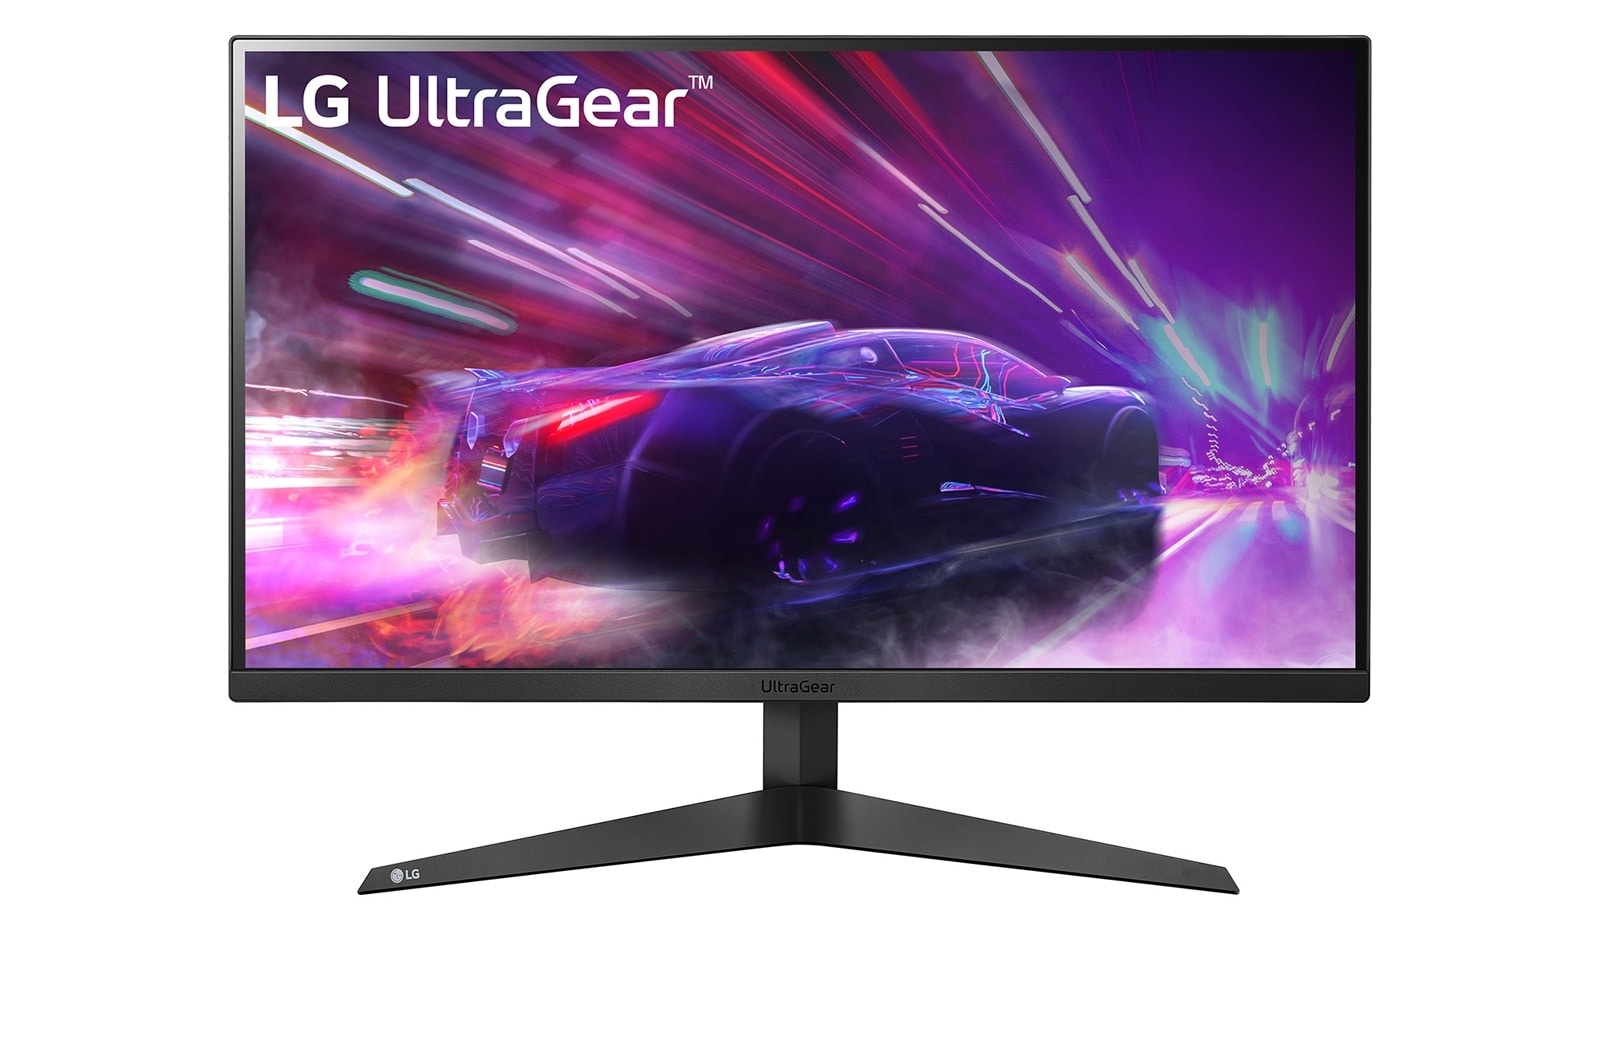 LG 23.8” UltraGear™ Full HD IPS 1ms (GtG) spelskärm